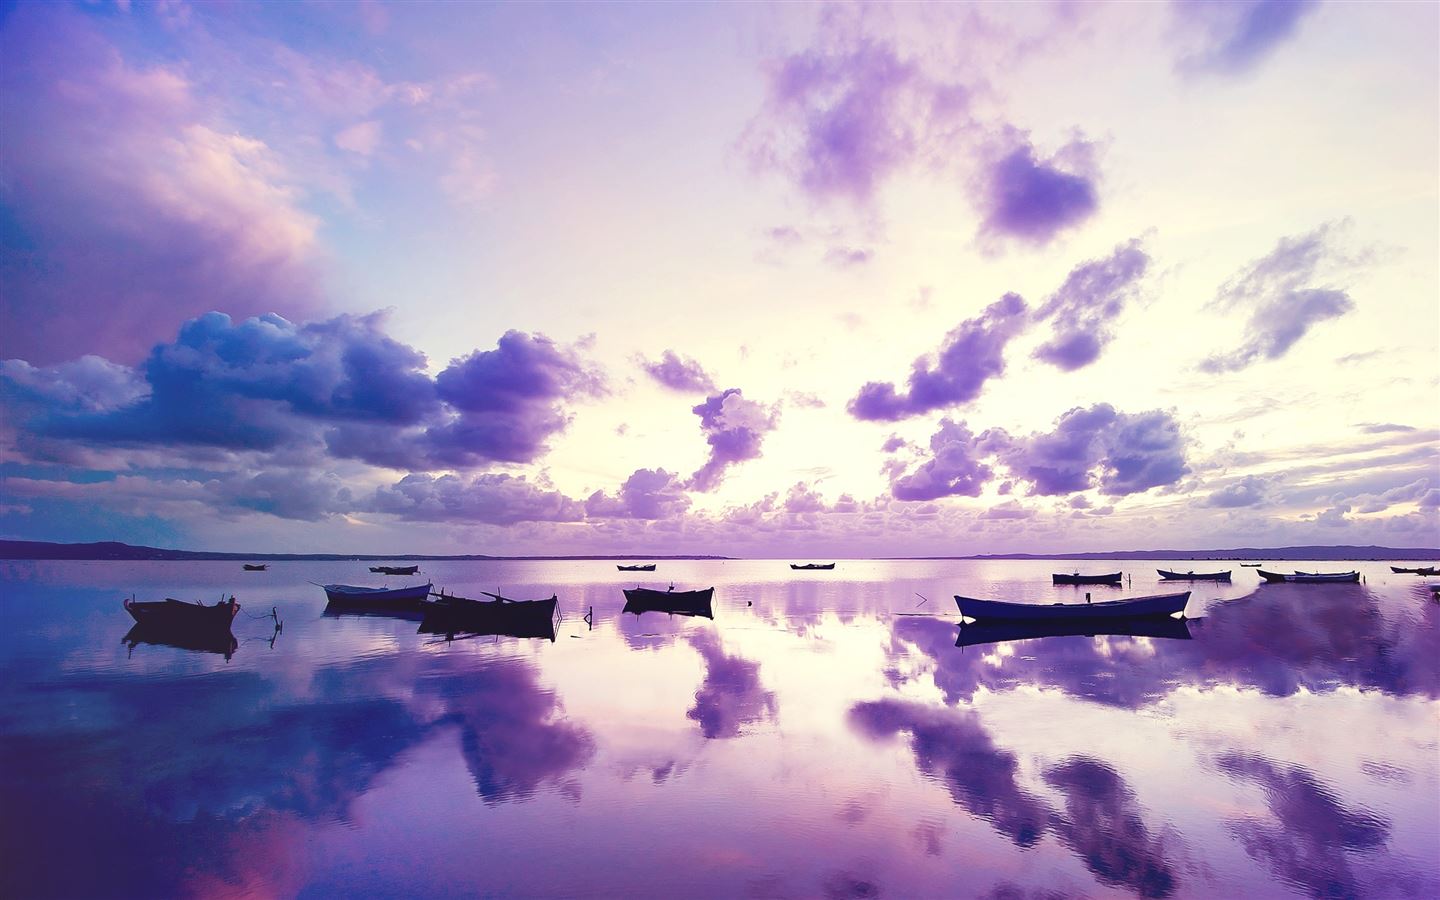 Cảm nhận bầu trời và biển cả trên màn hình Macbook của bạn với hình nền bình minh đầy màu sắc của đại dương. Một trải nghiệm thư giãn và cảm xúc sẽ đưa bạn đến với một thế giới mới.